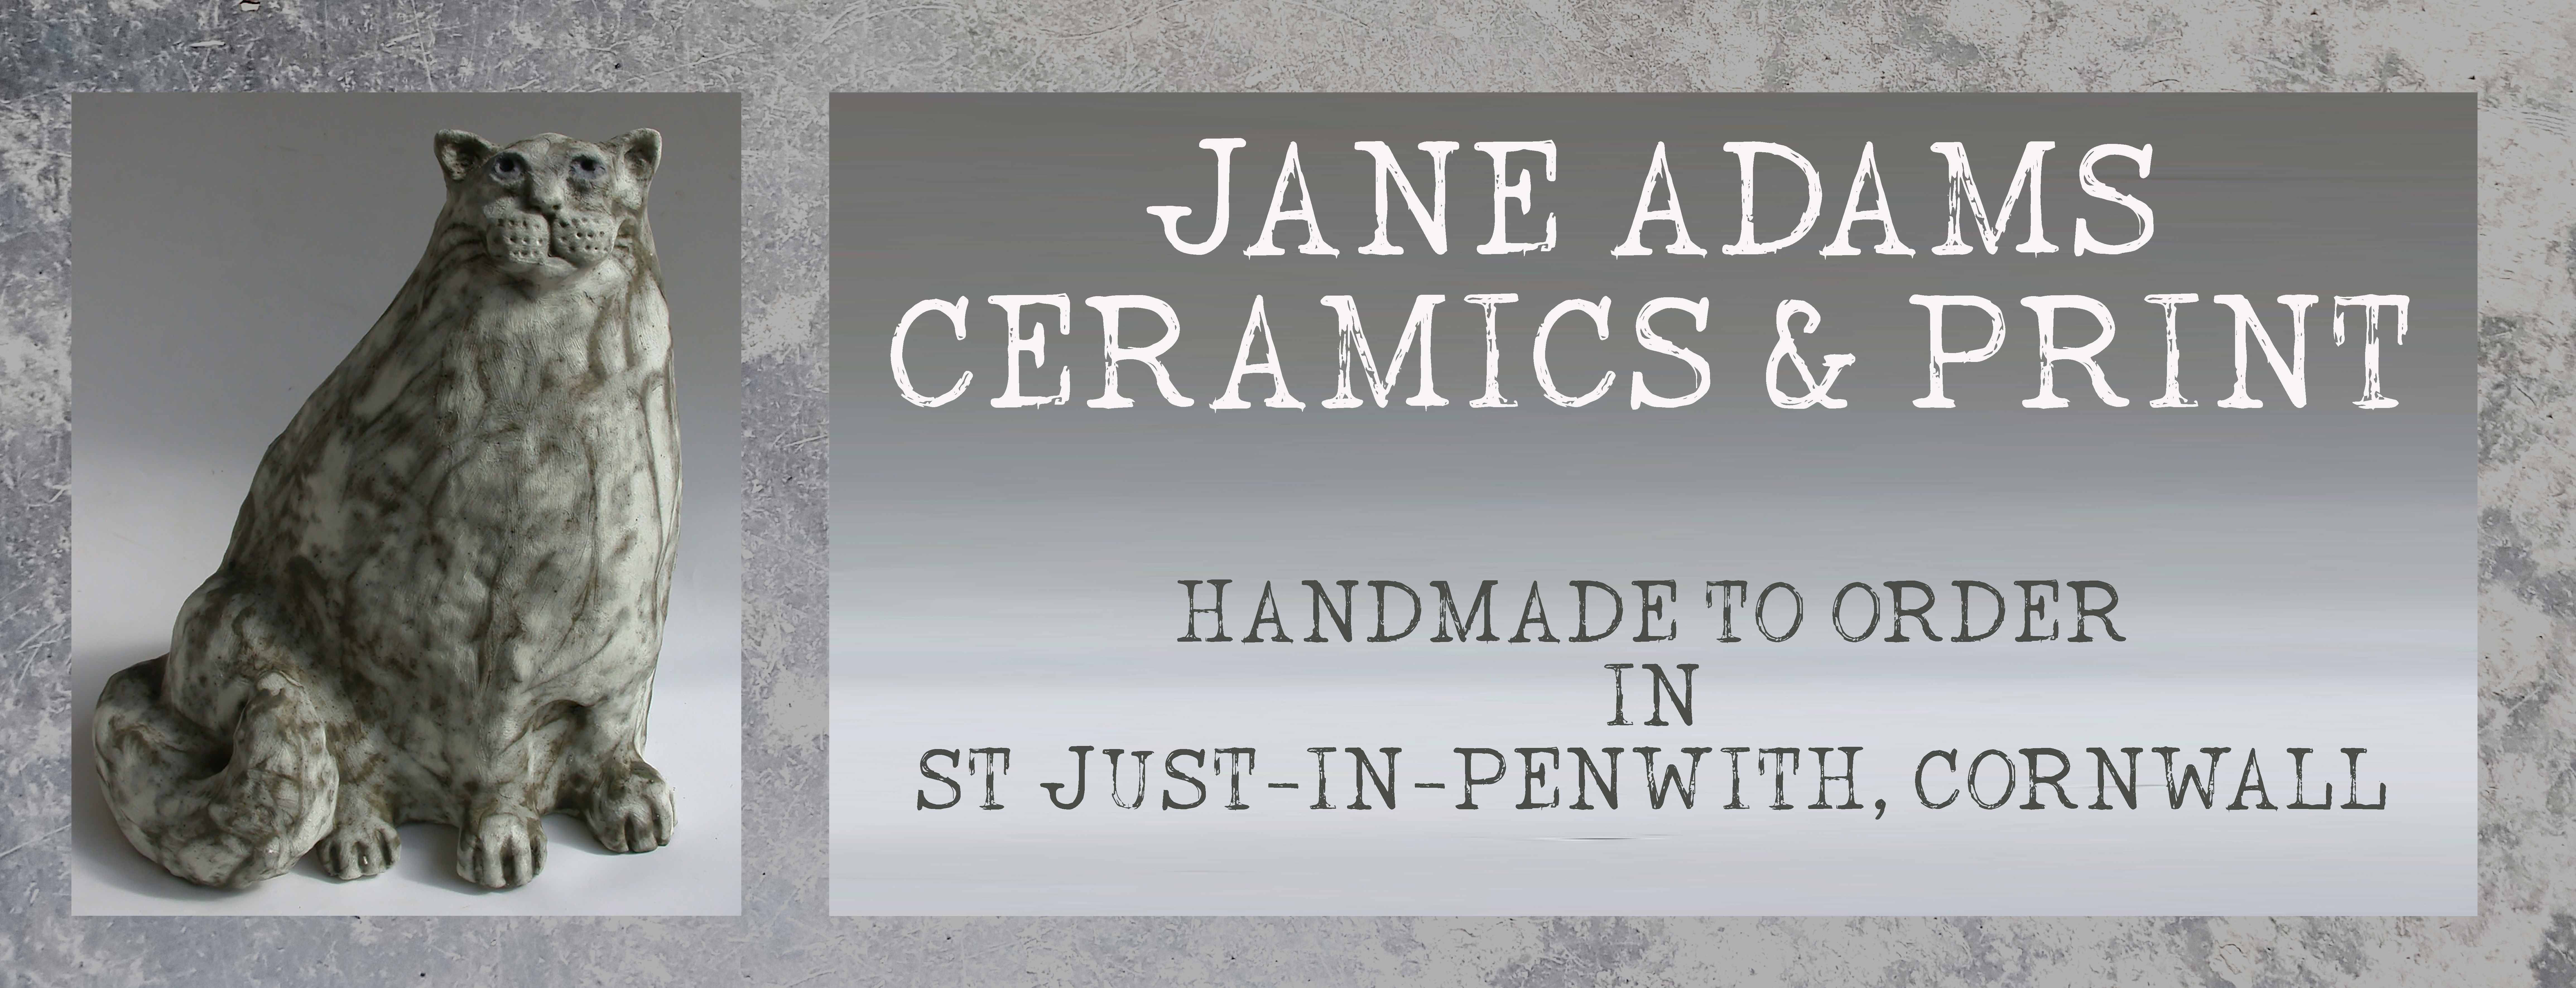 jane adams ceramics and print logo